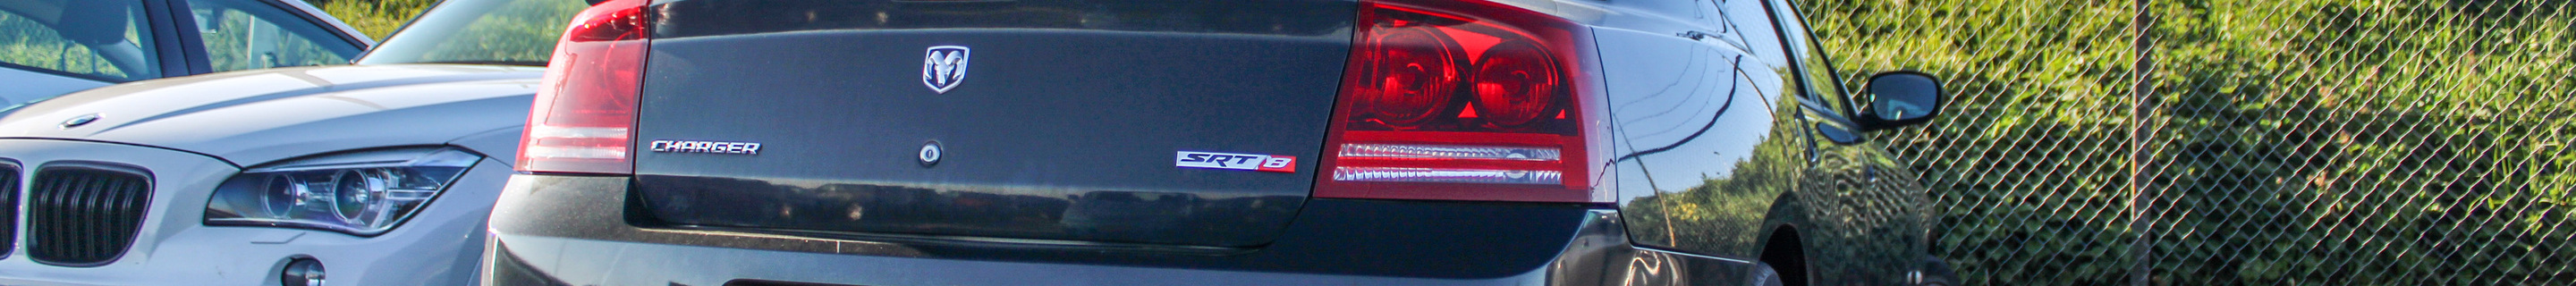 Dodge Charger SRT-8